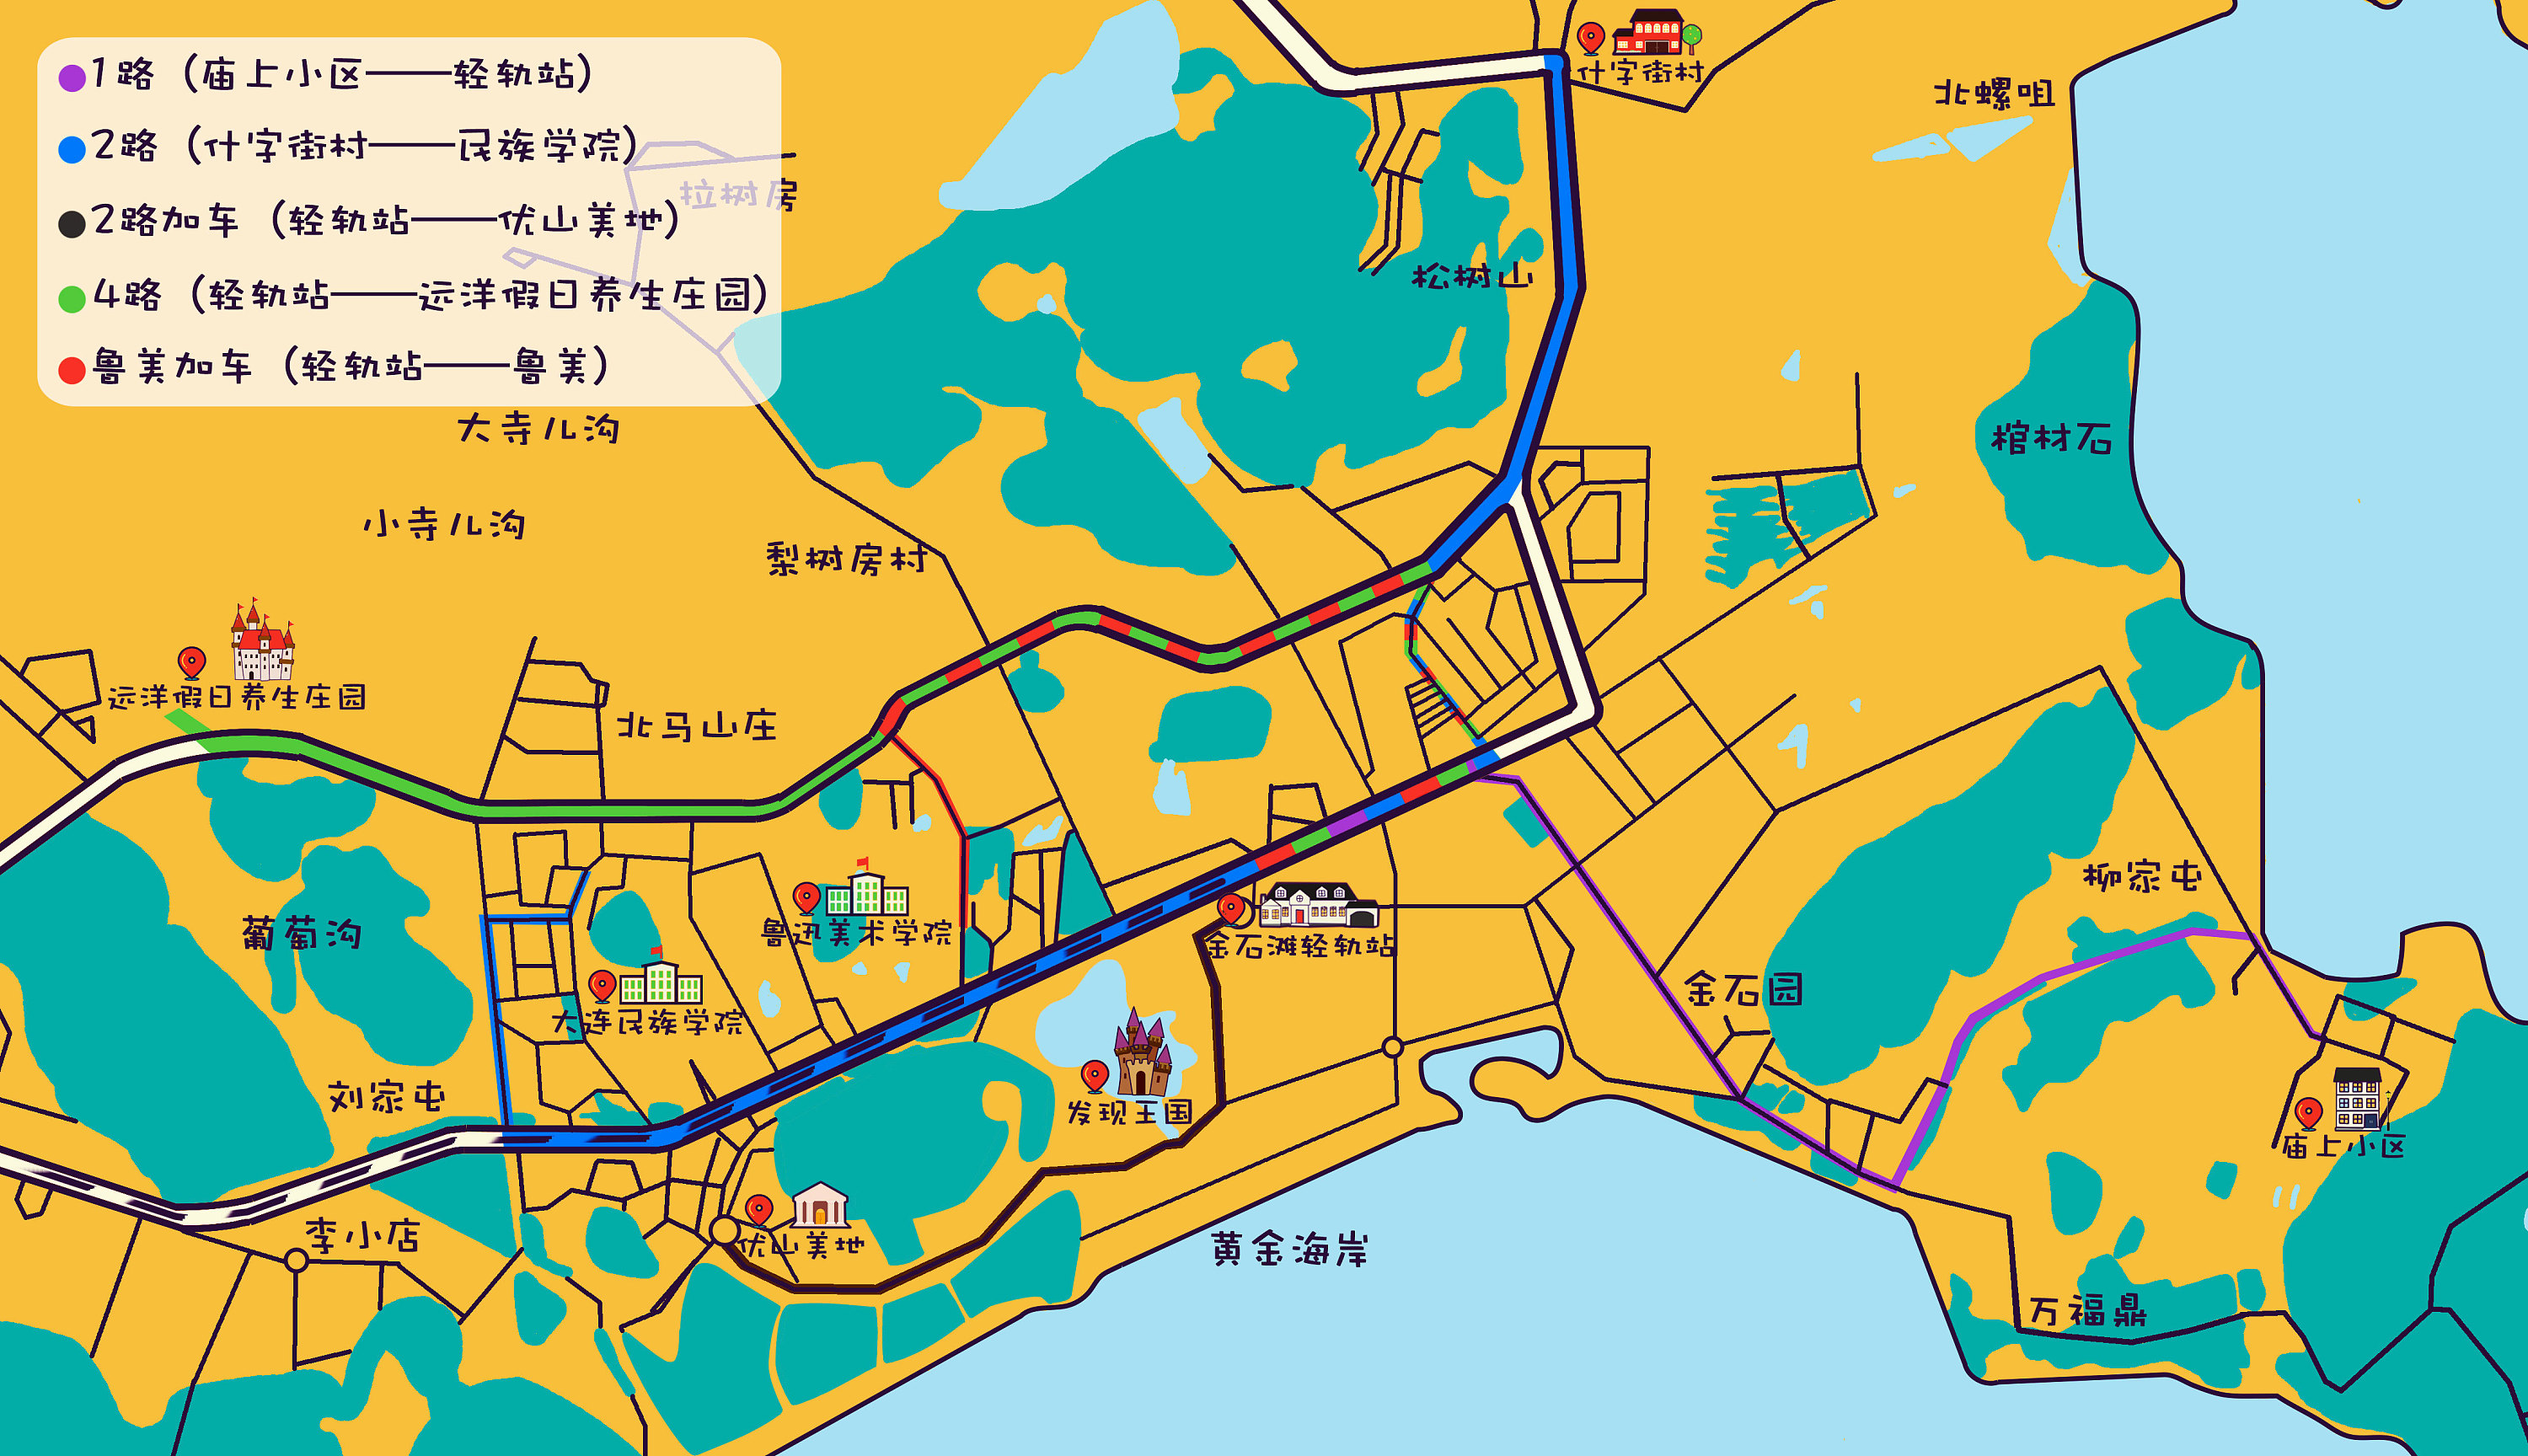 『信息设计』大连金石滩轻轨站标示 公交站线路图